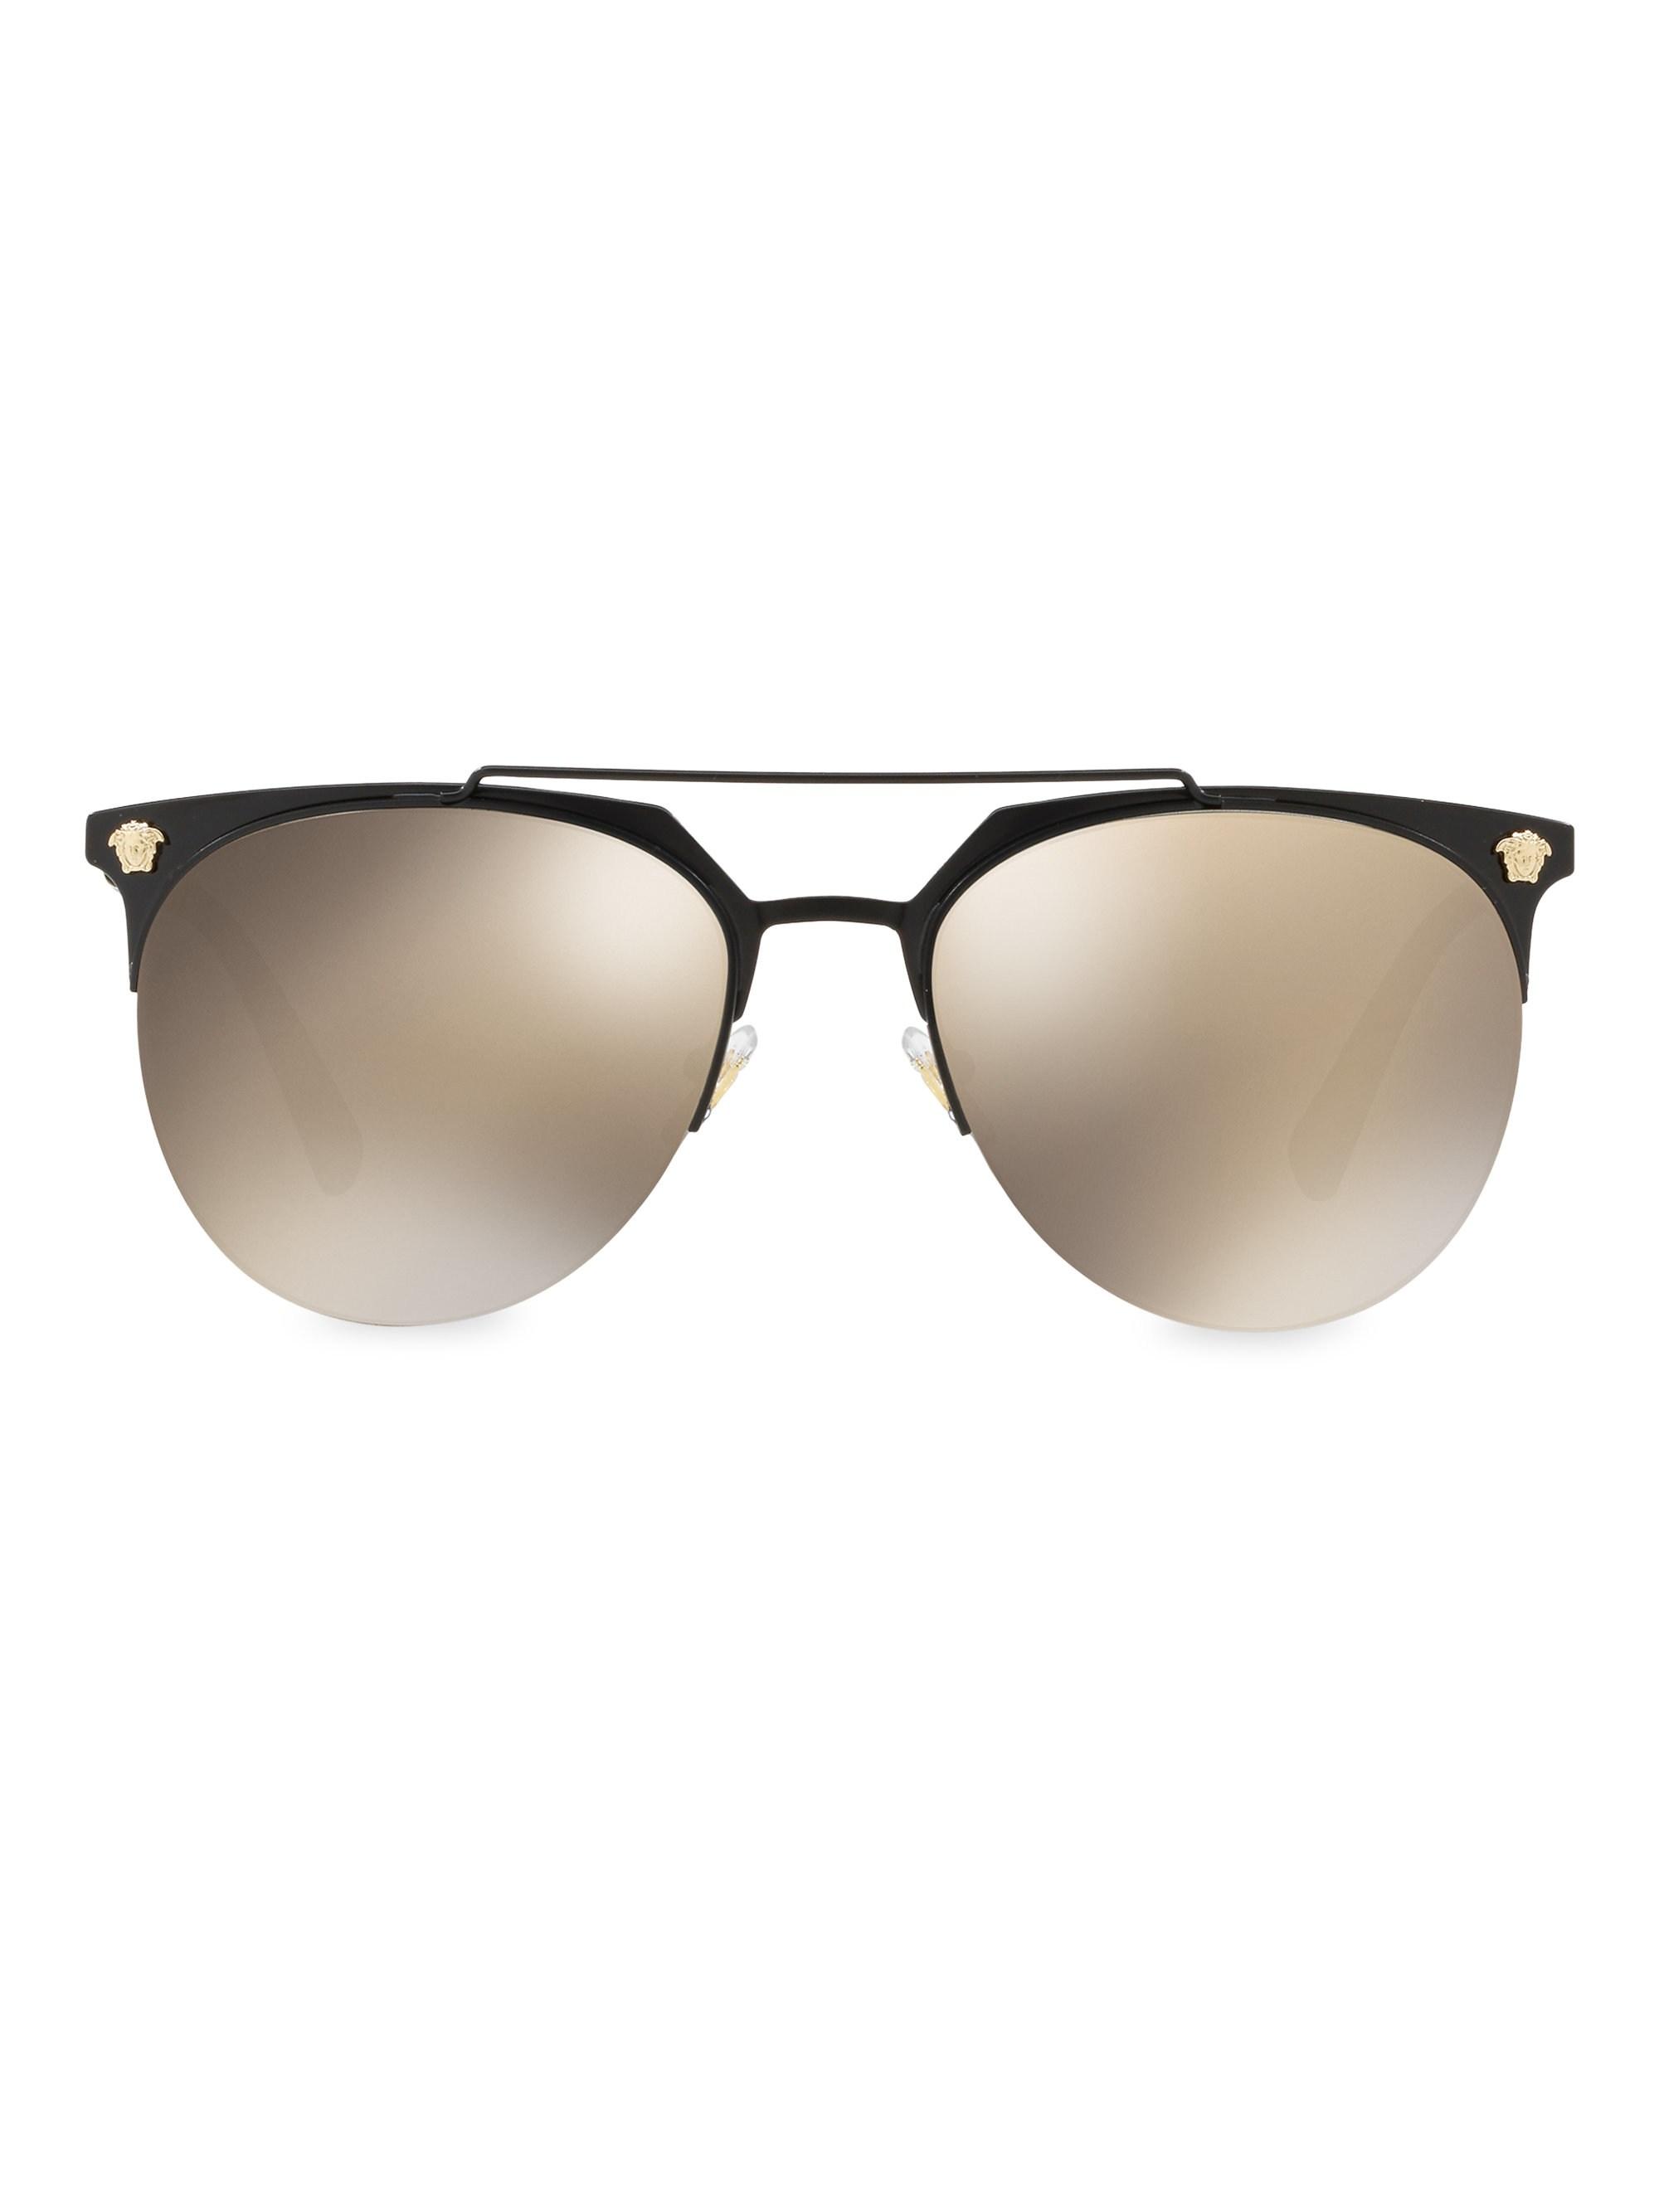 versace clubmaster sunglasses 6e05ac